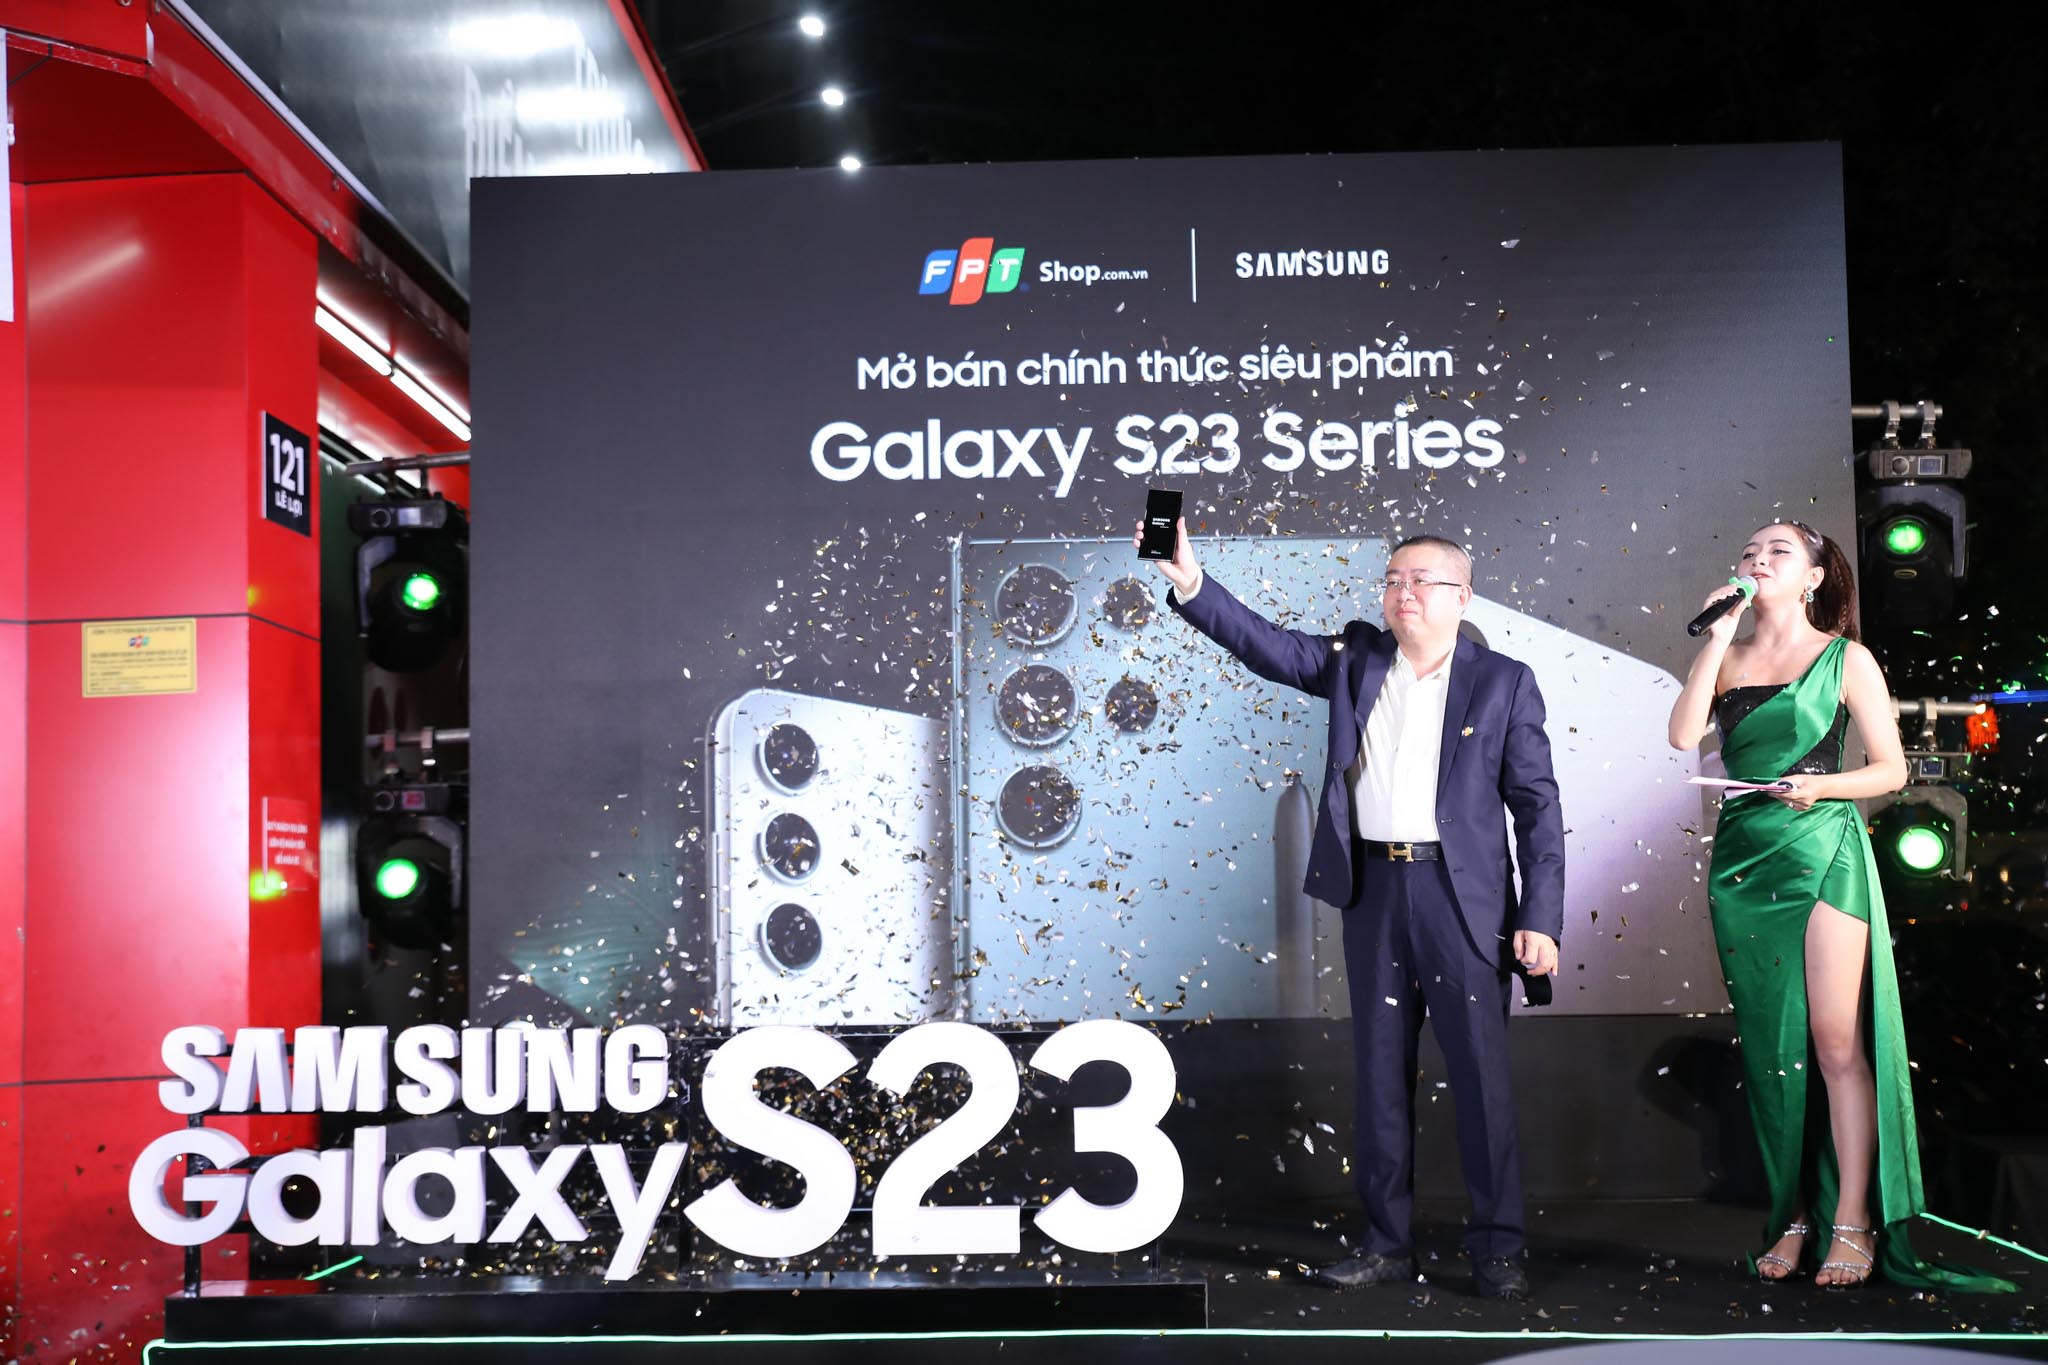 FPT Shop mở bán Galaxy S23 Series sớm nhất Việt Nam